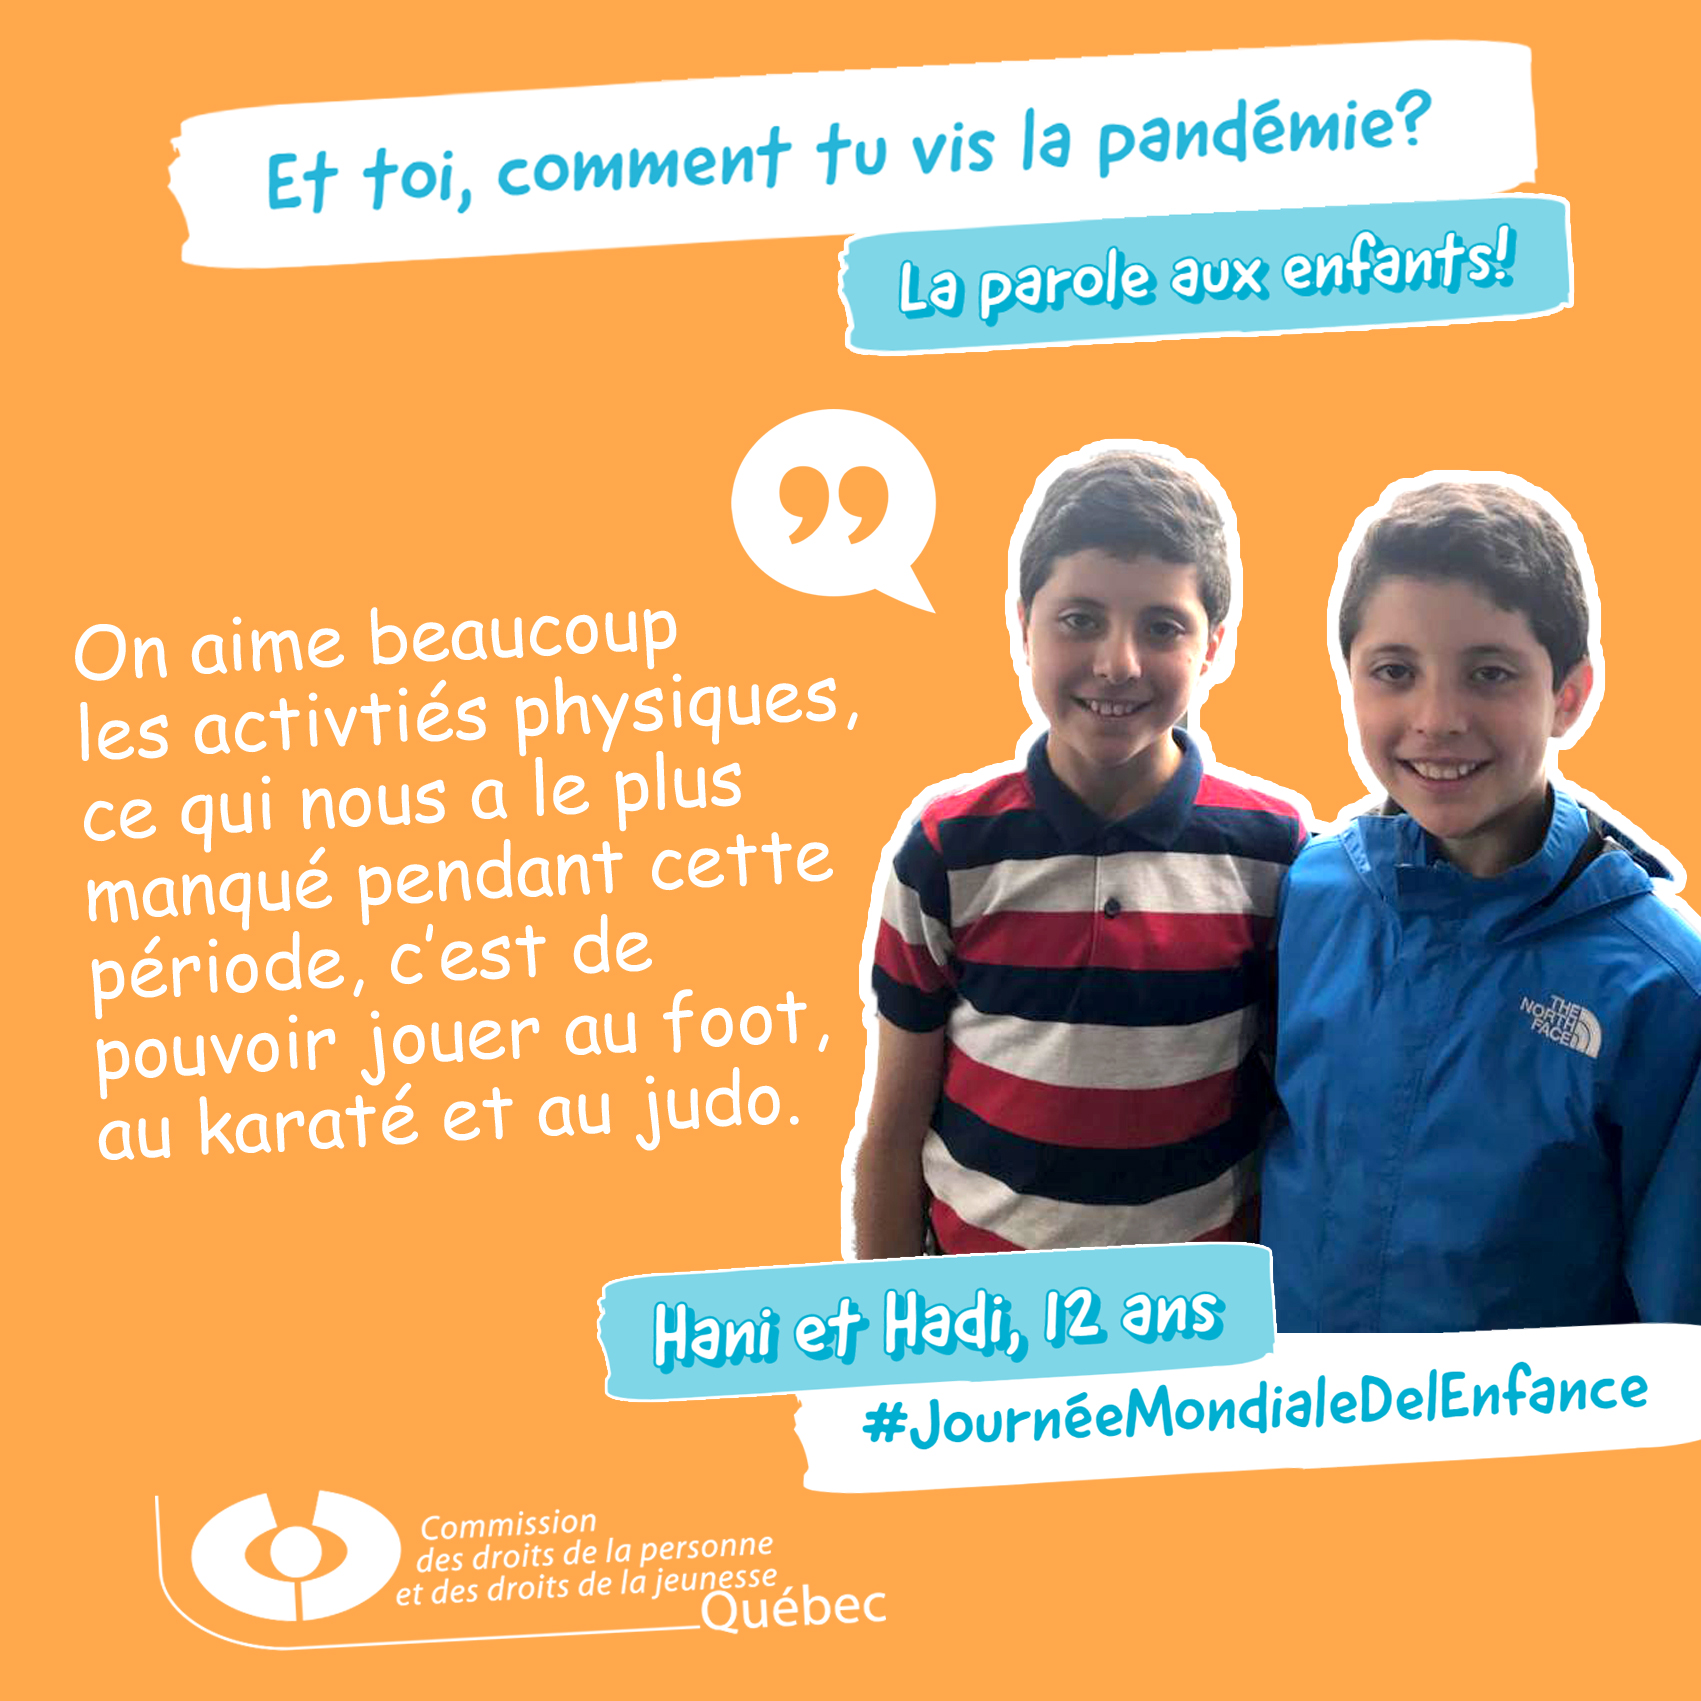 Photo et citation de Hani et Hadi qui répondent à la question Et toi, comment tu vis la pandémie?